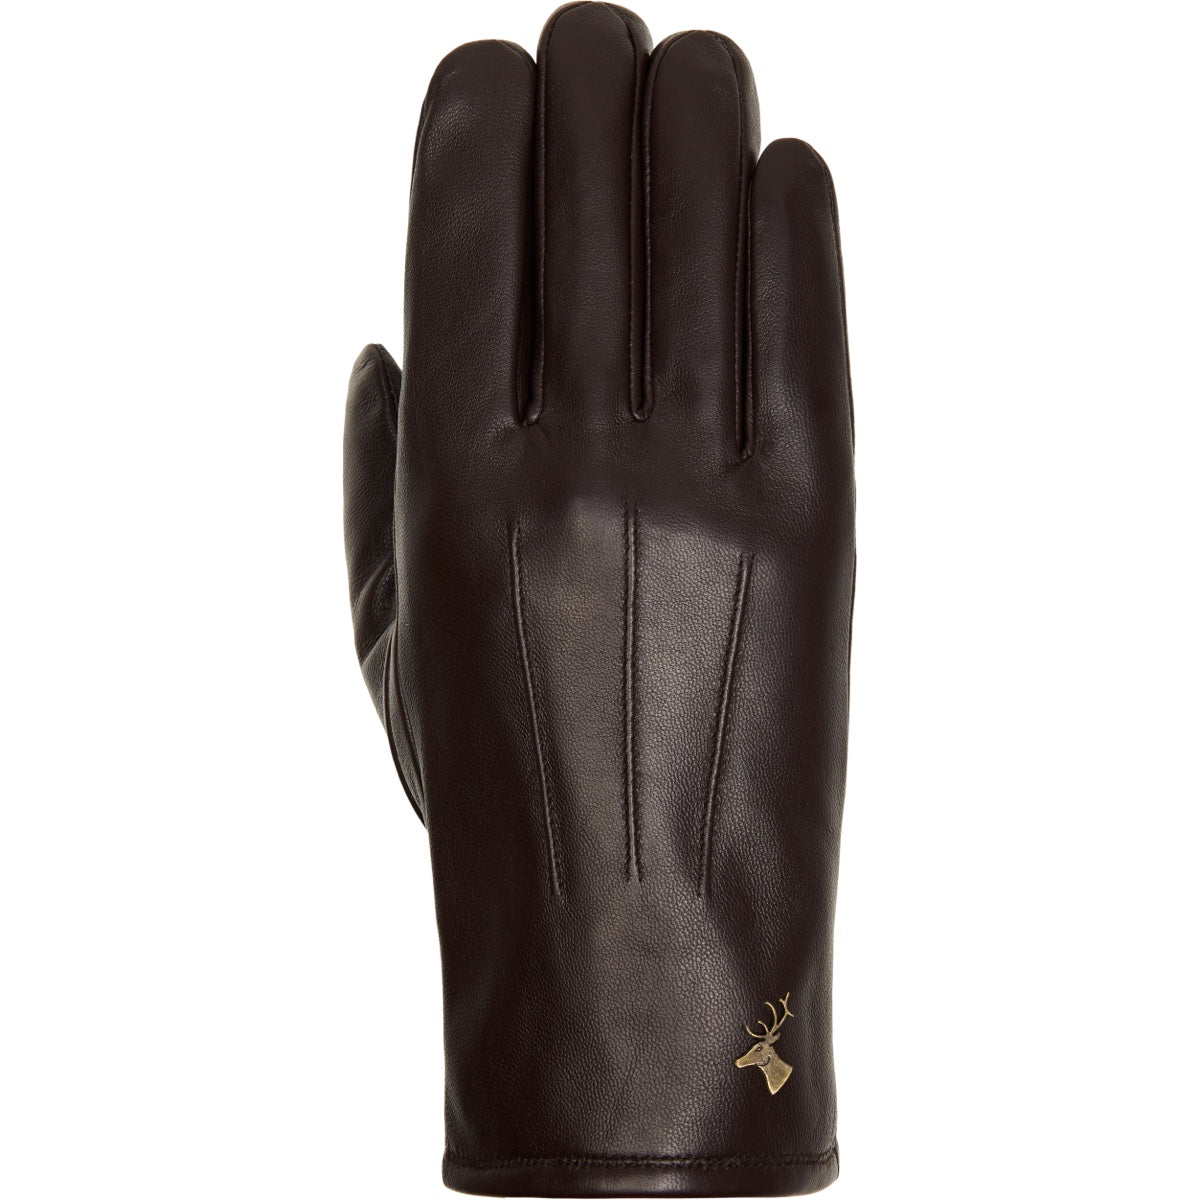 Dark Brown Leather Gloves Men Jake - Schwartz & von Halen® - Premium Leather Gloves - 1